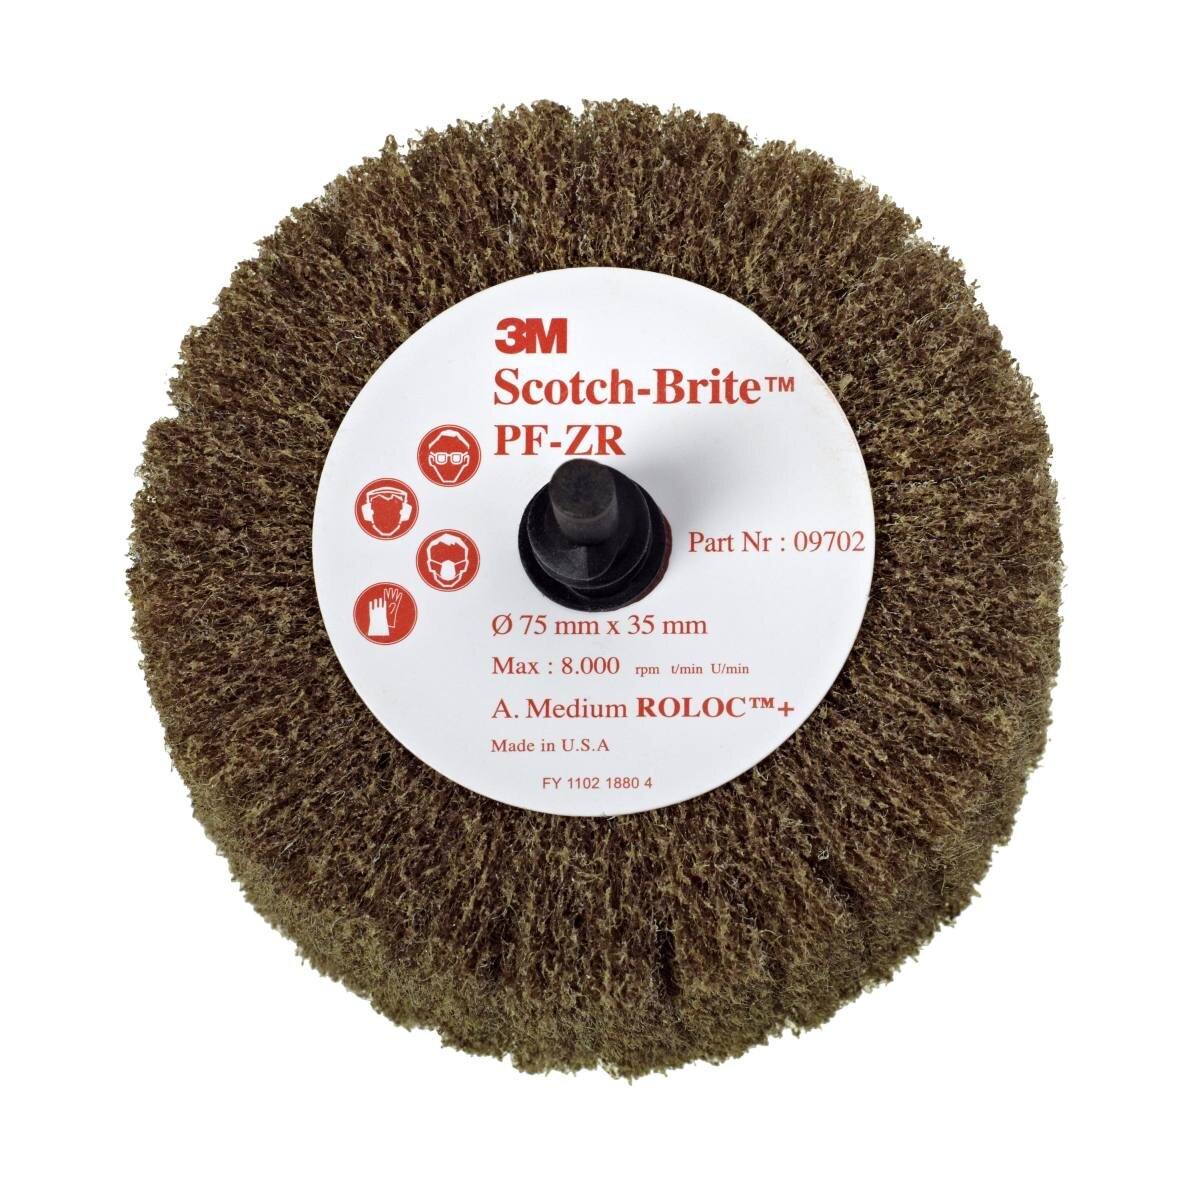 3M Scotch-Brite Roloc spazzola per lamella PF-ZR, marrone, 50,8 mm, 25 mm, A, media #09700